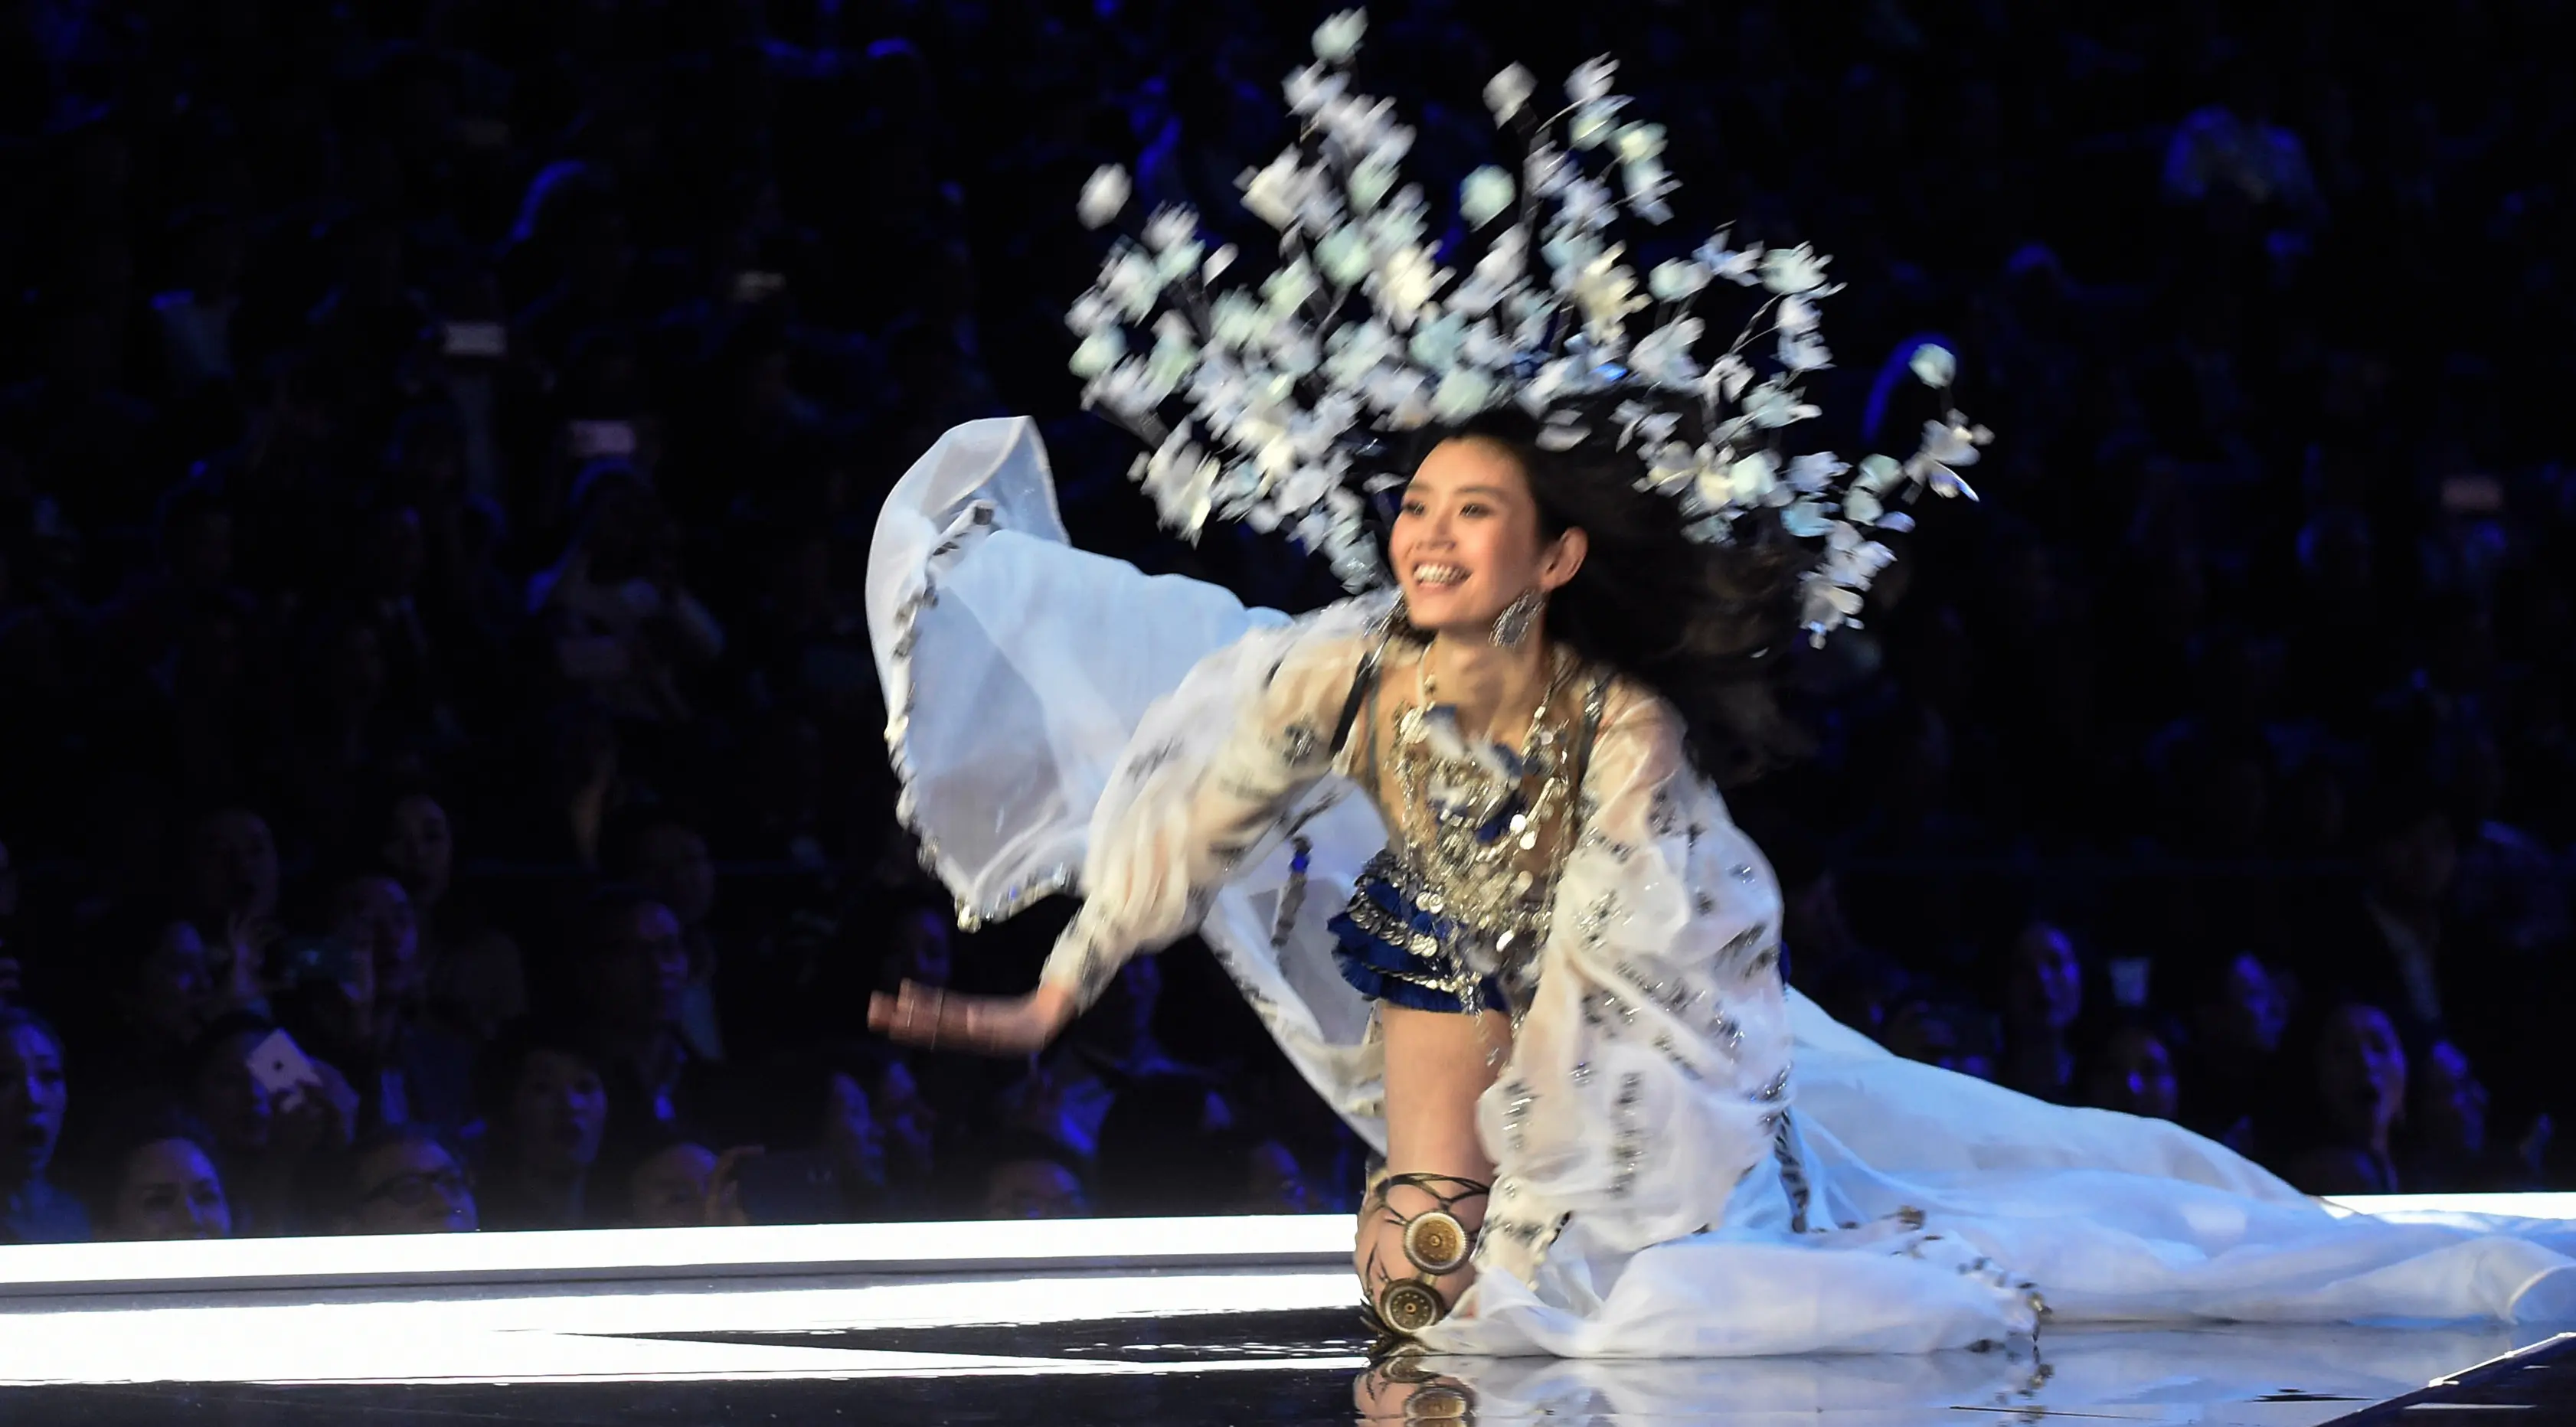 Model Tiongkok, Ming Xi jatuh tersungkur di atas catwalk Victoria’s Secret Fashion Show 2017 saat memperagakan koleksi lingerie di Shanghai, Senin (20/11). Ming mengenakan busana warna biru dan silver dengan headpiece bunga yang rumit. (FRED DUFOUR/AFP)